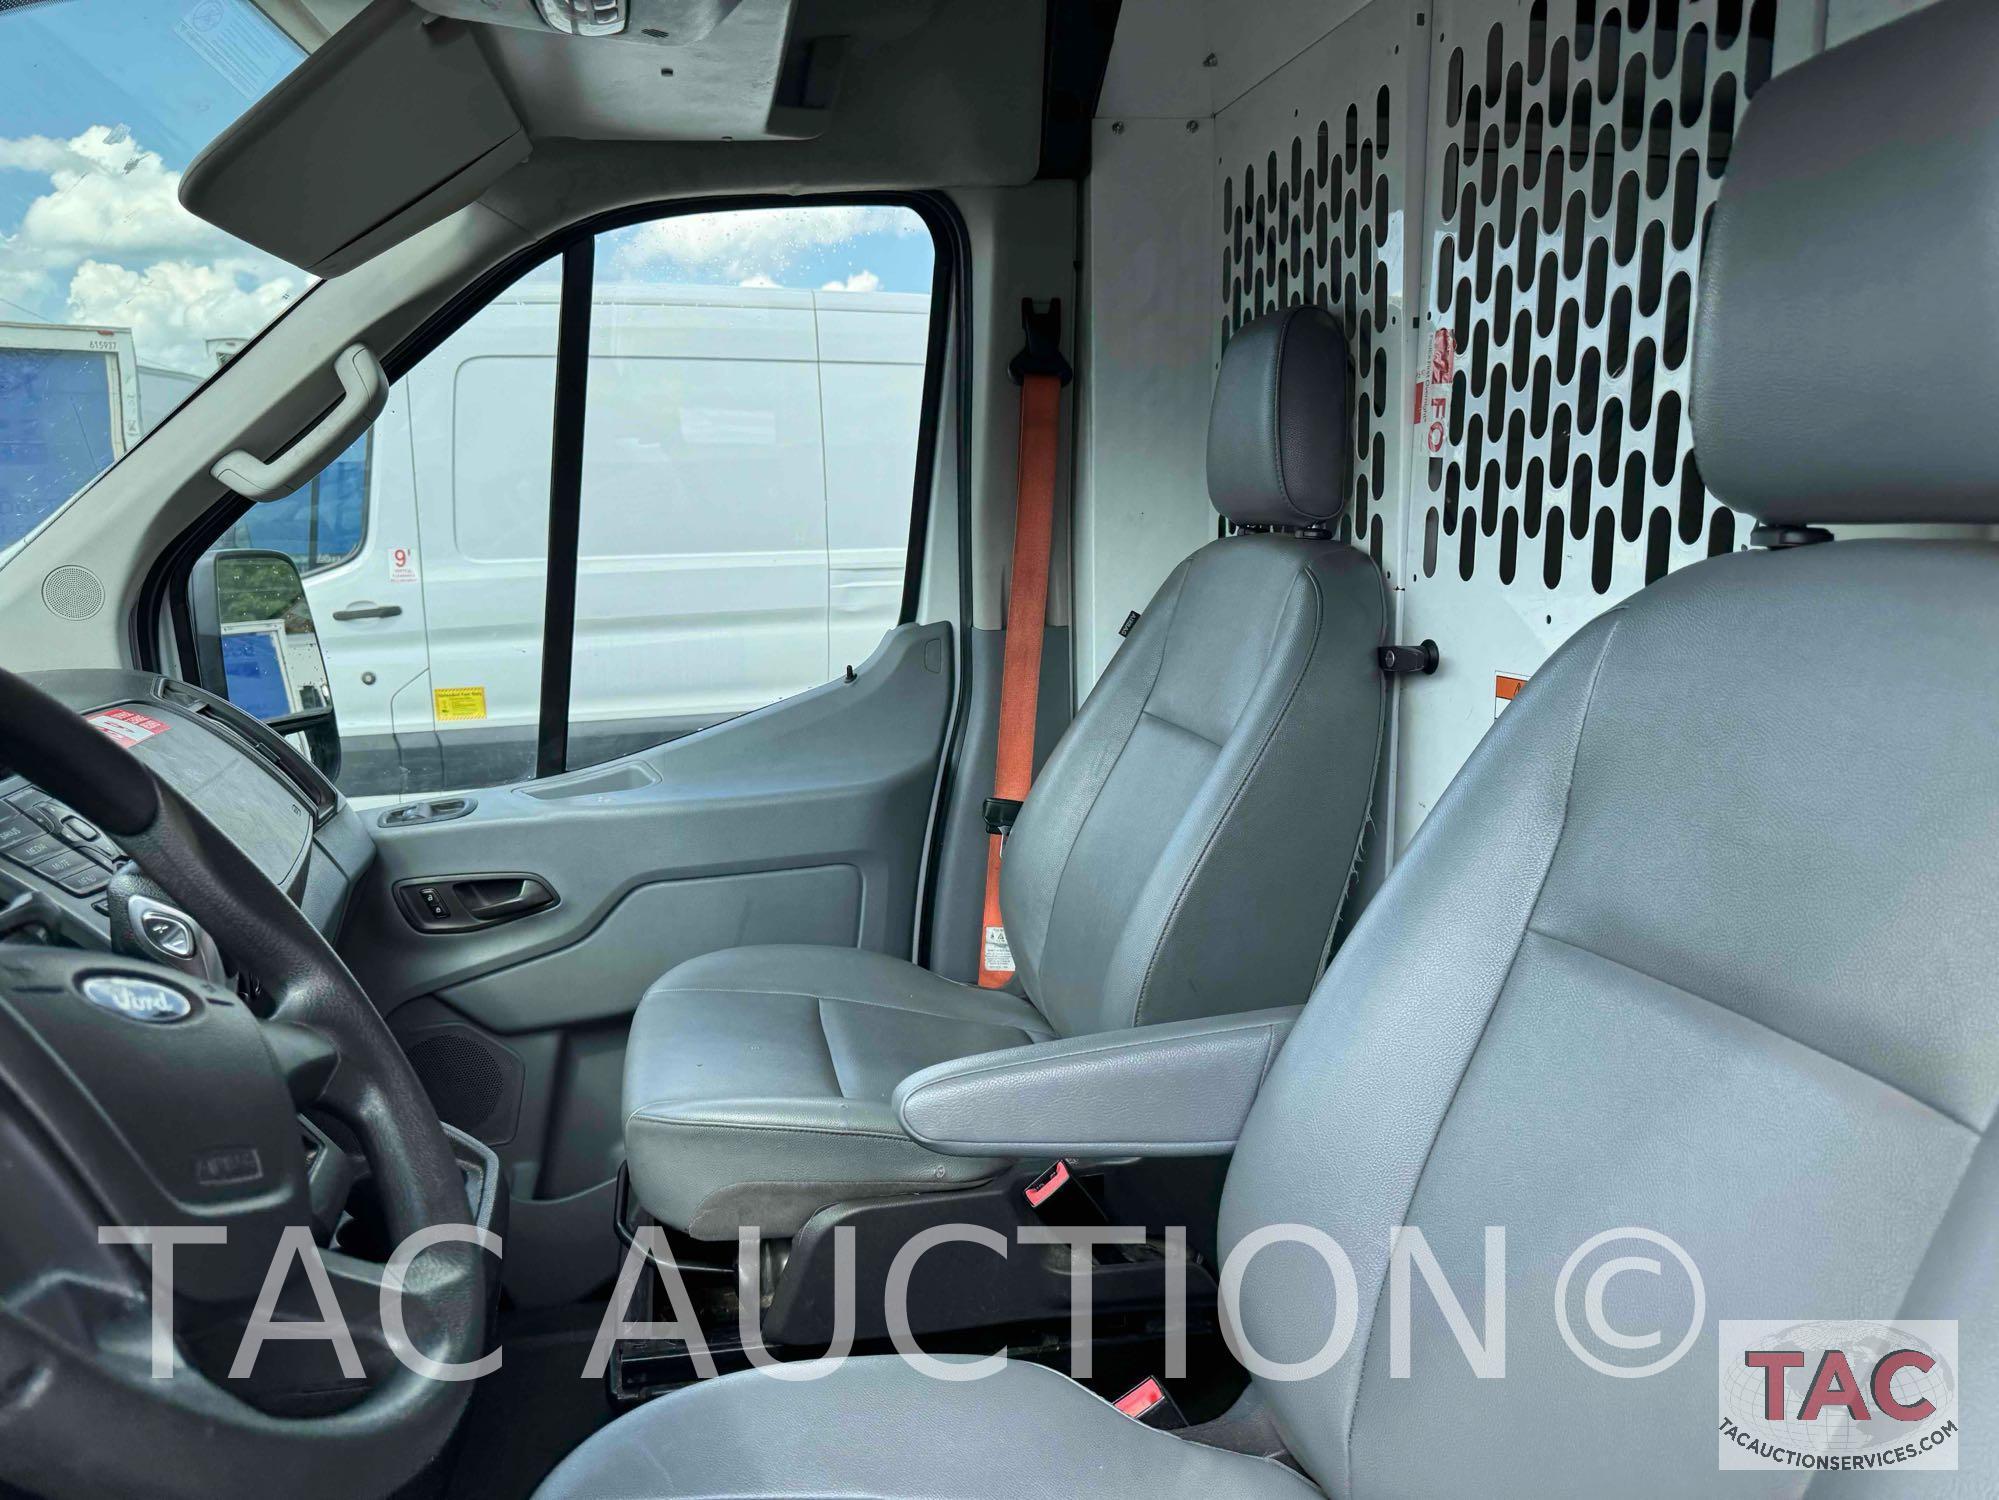 2019 Ford Transit 150 Cargo Van